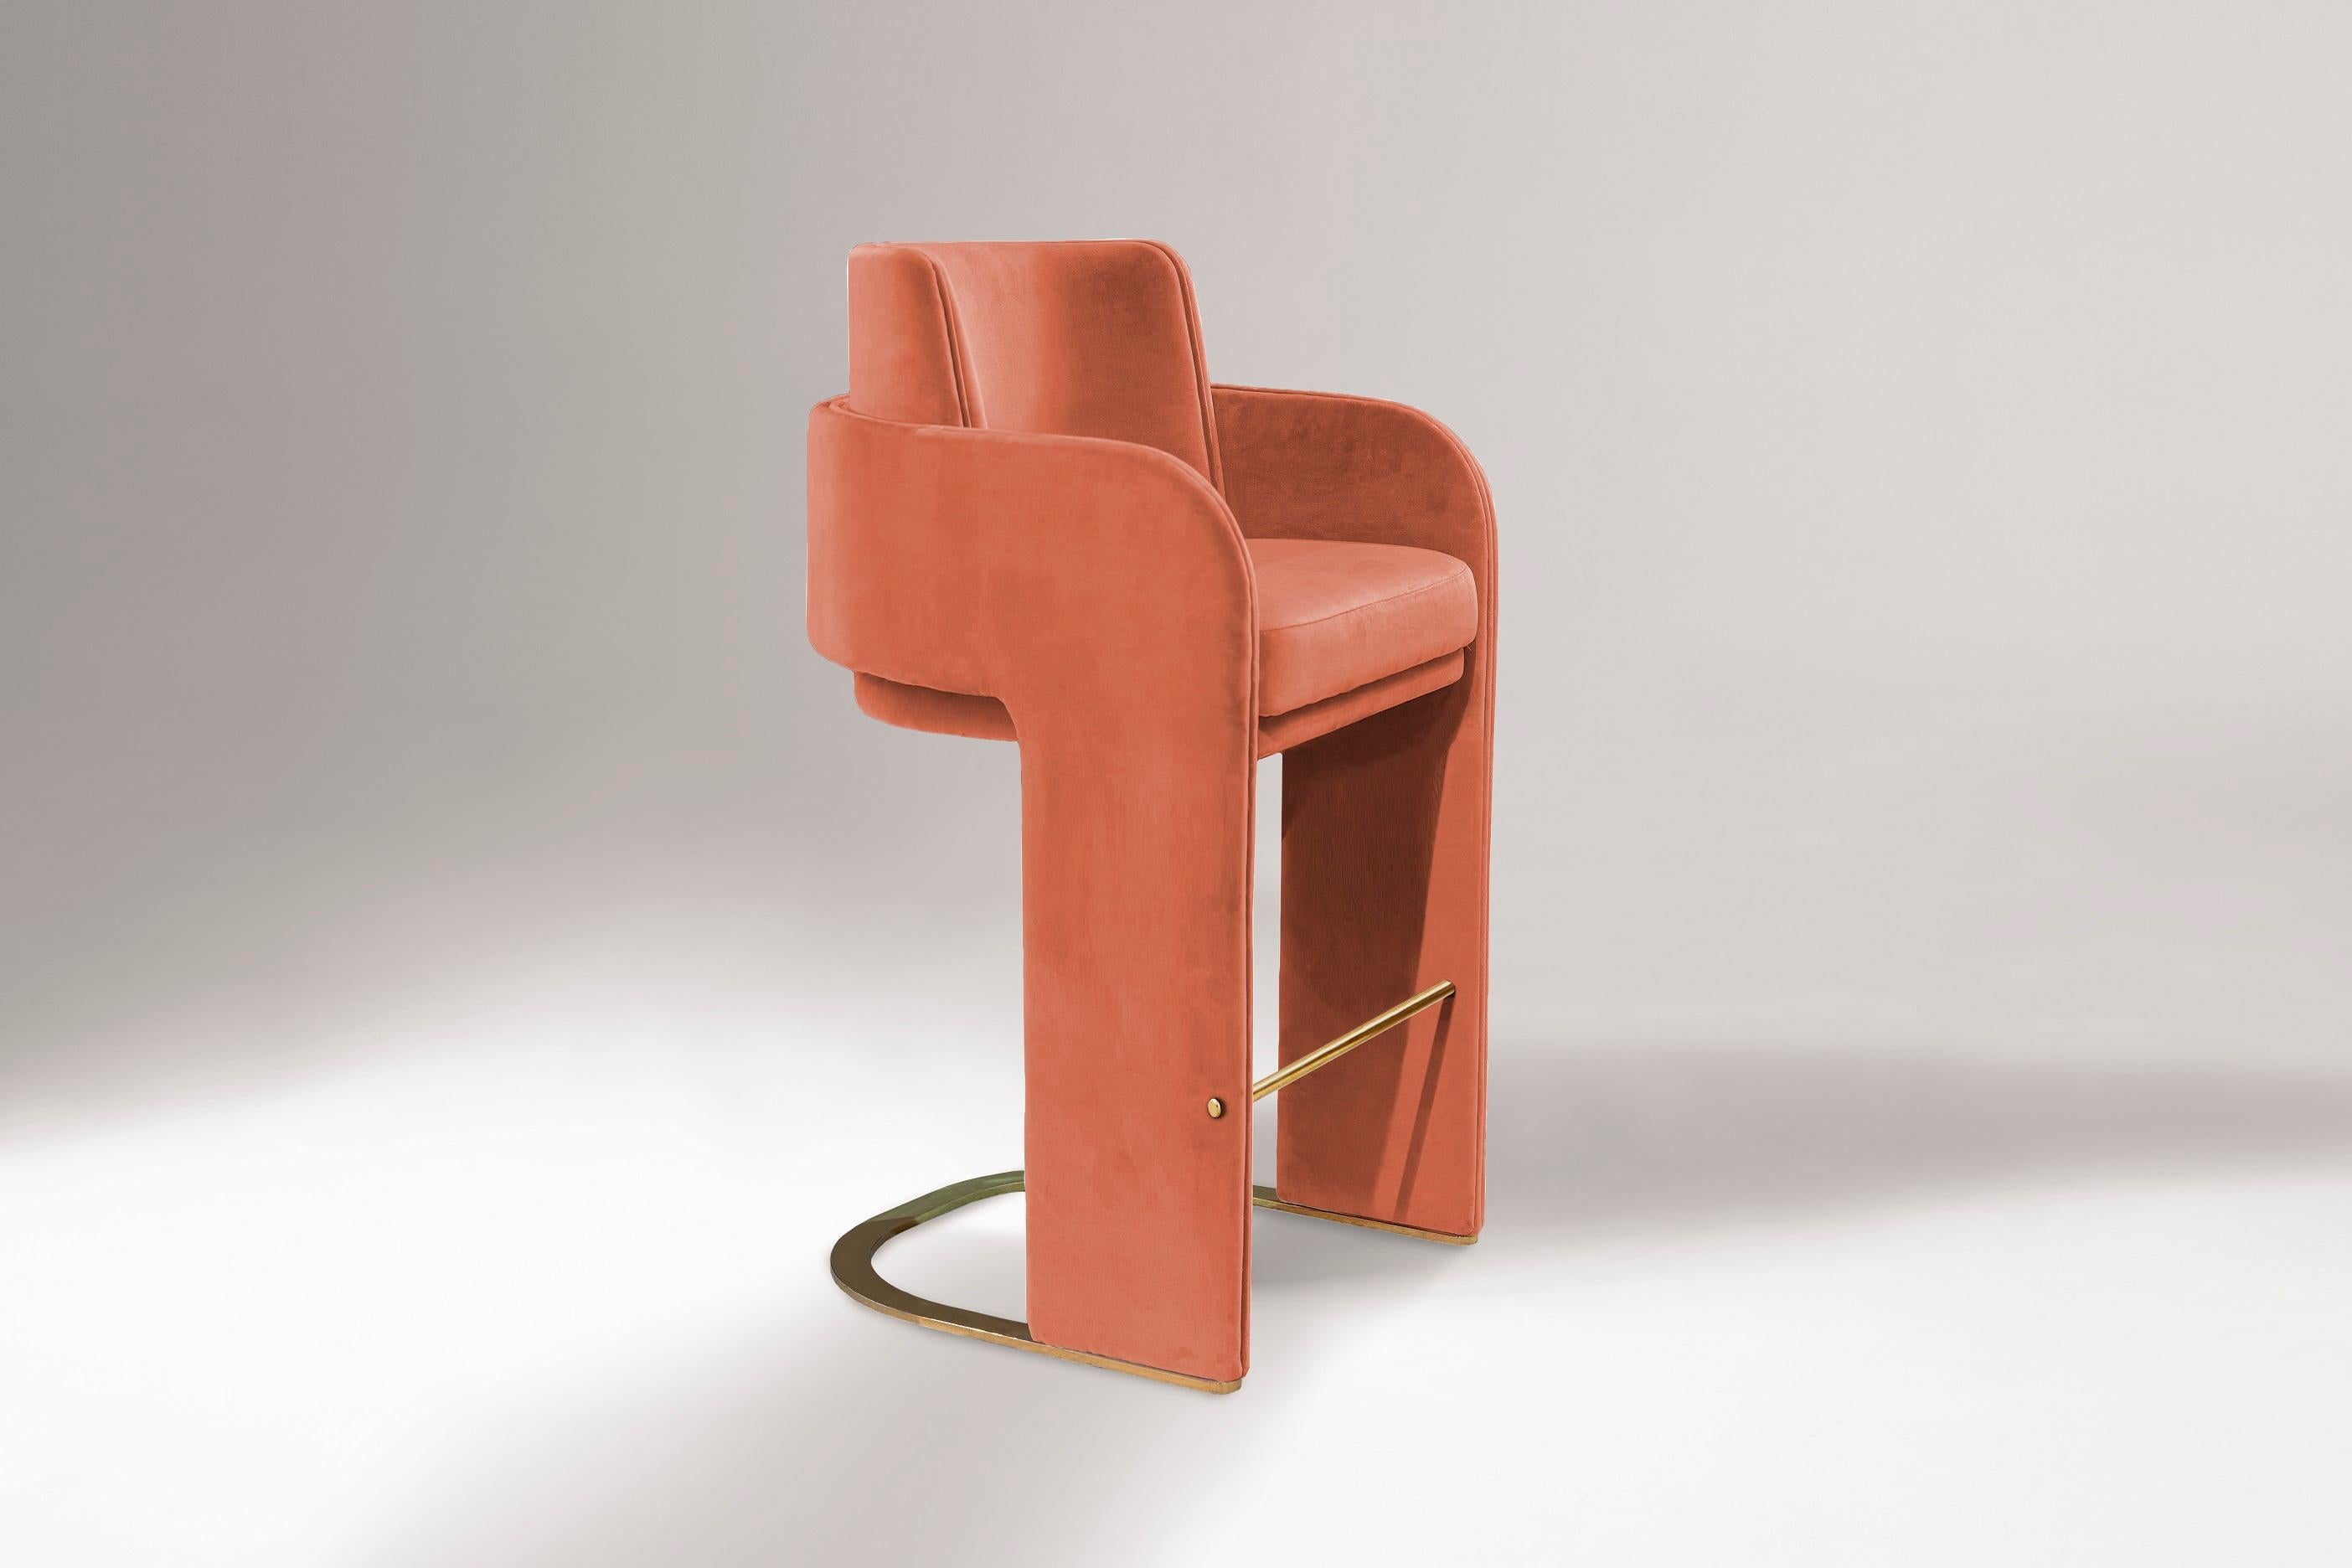 Le fauteuil de comptoir Odisseia incarne l'esprit esthétique de l'ère spatiale, un nouveau type de luxe discret et de confort inspiré d'une ère futuriste créée par de nouvelles expériences visuelles et des concepts du futur. Cette pièce sans effort